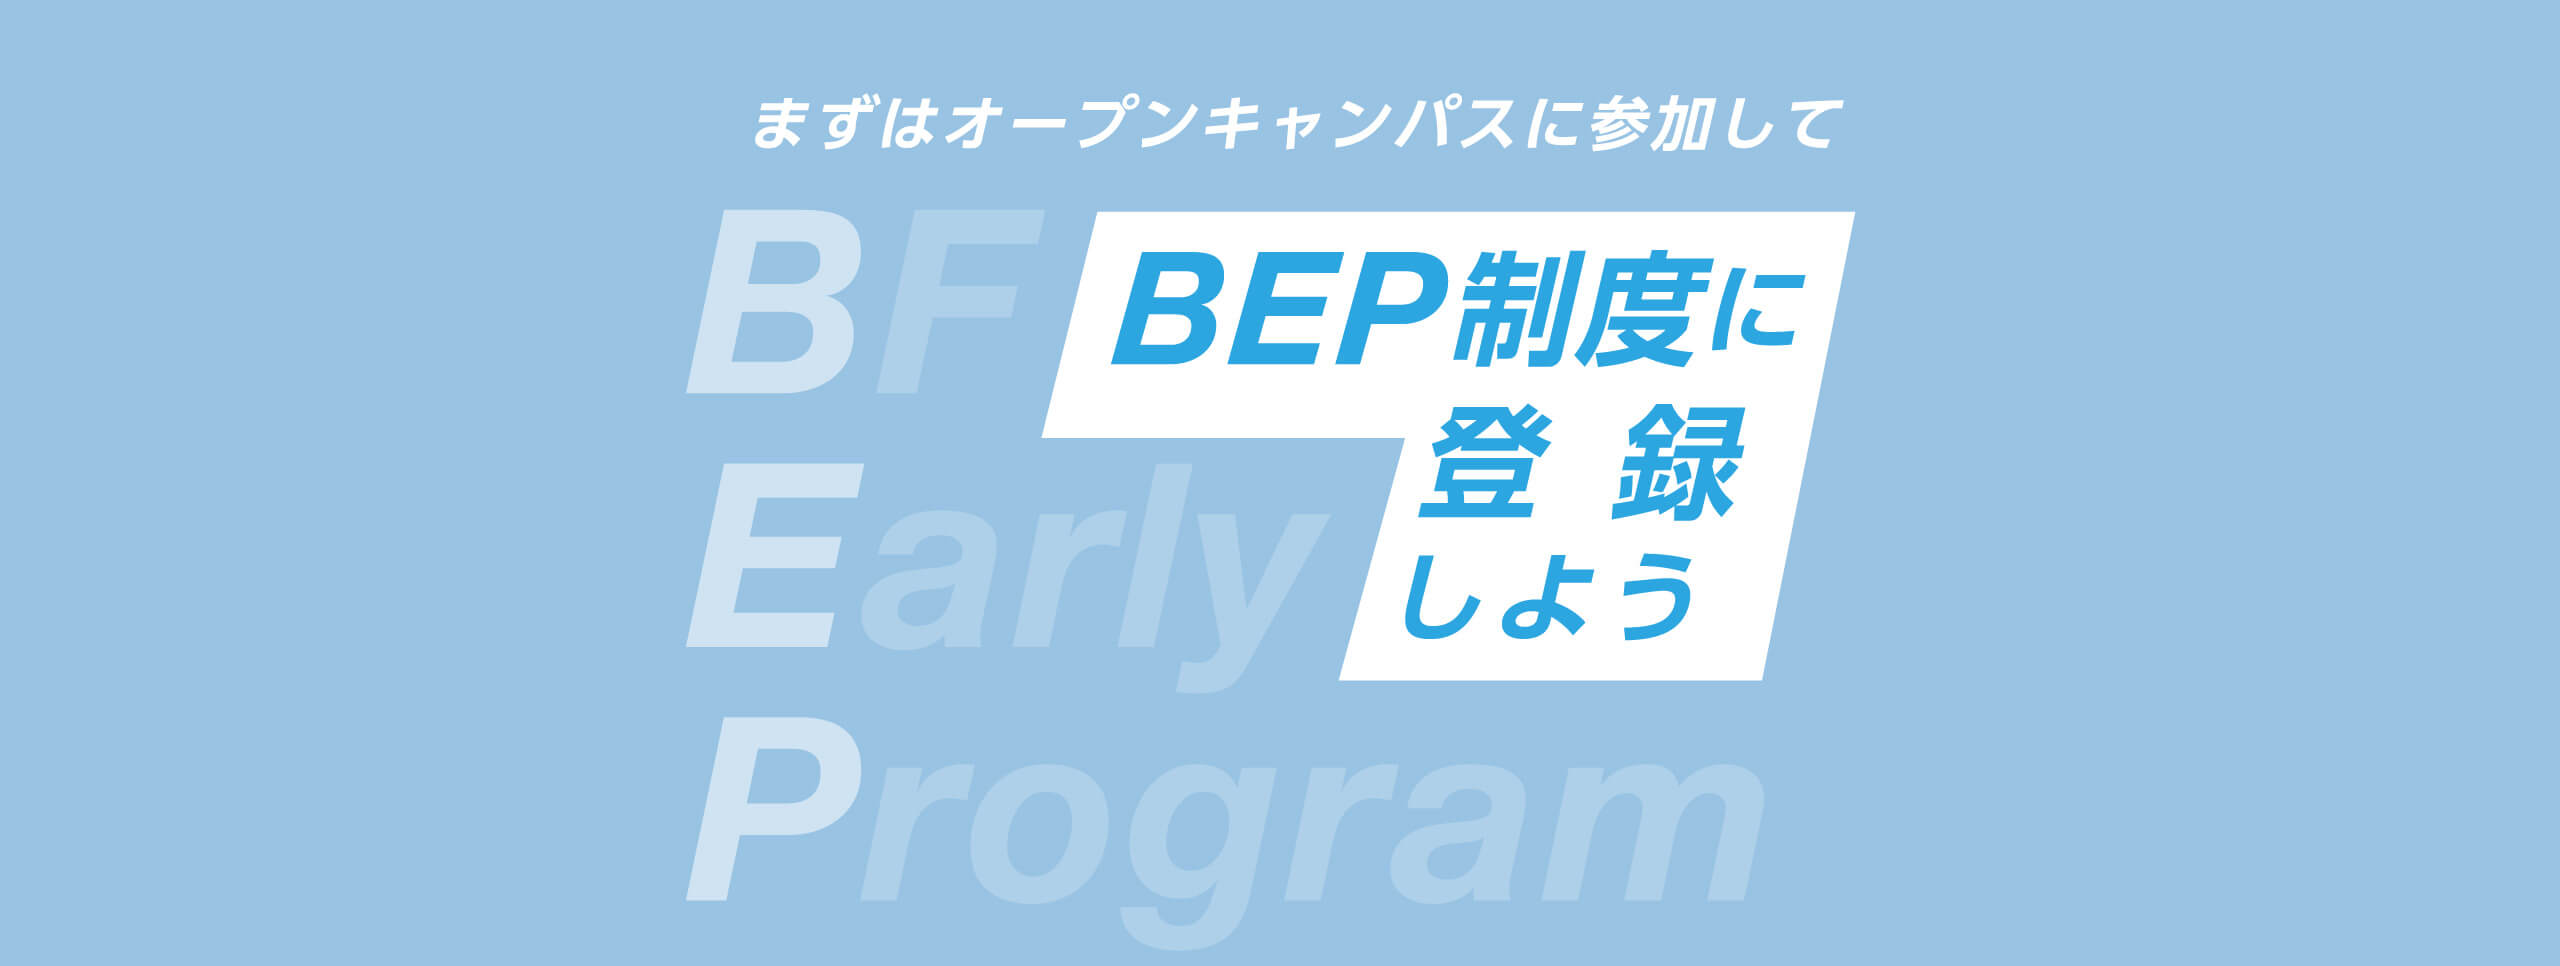 まずはオープンキャンパスに参加してBEP制度に登録しよう